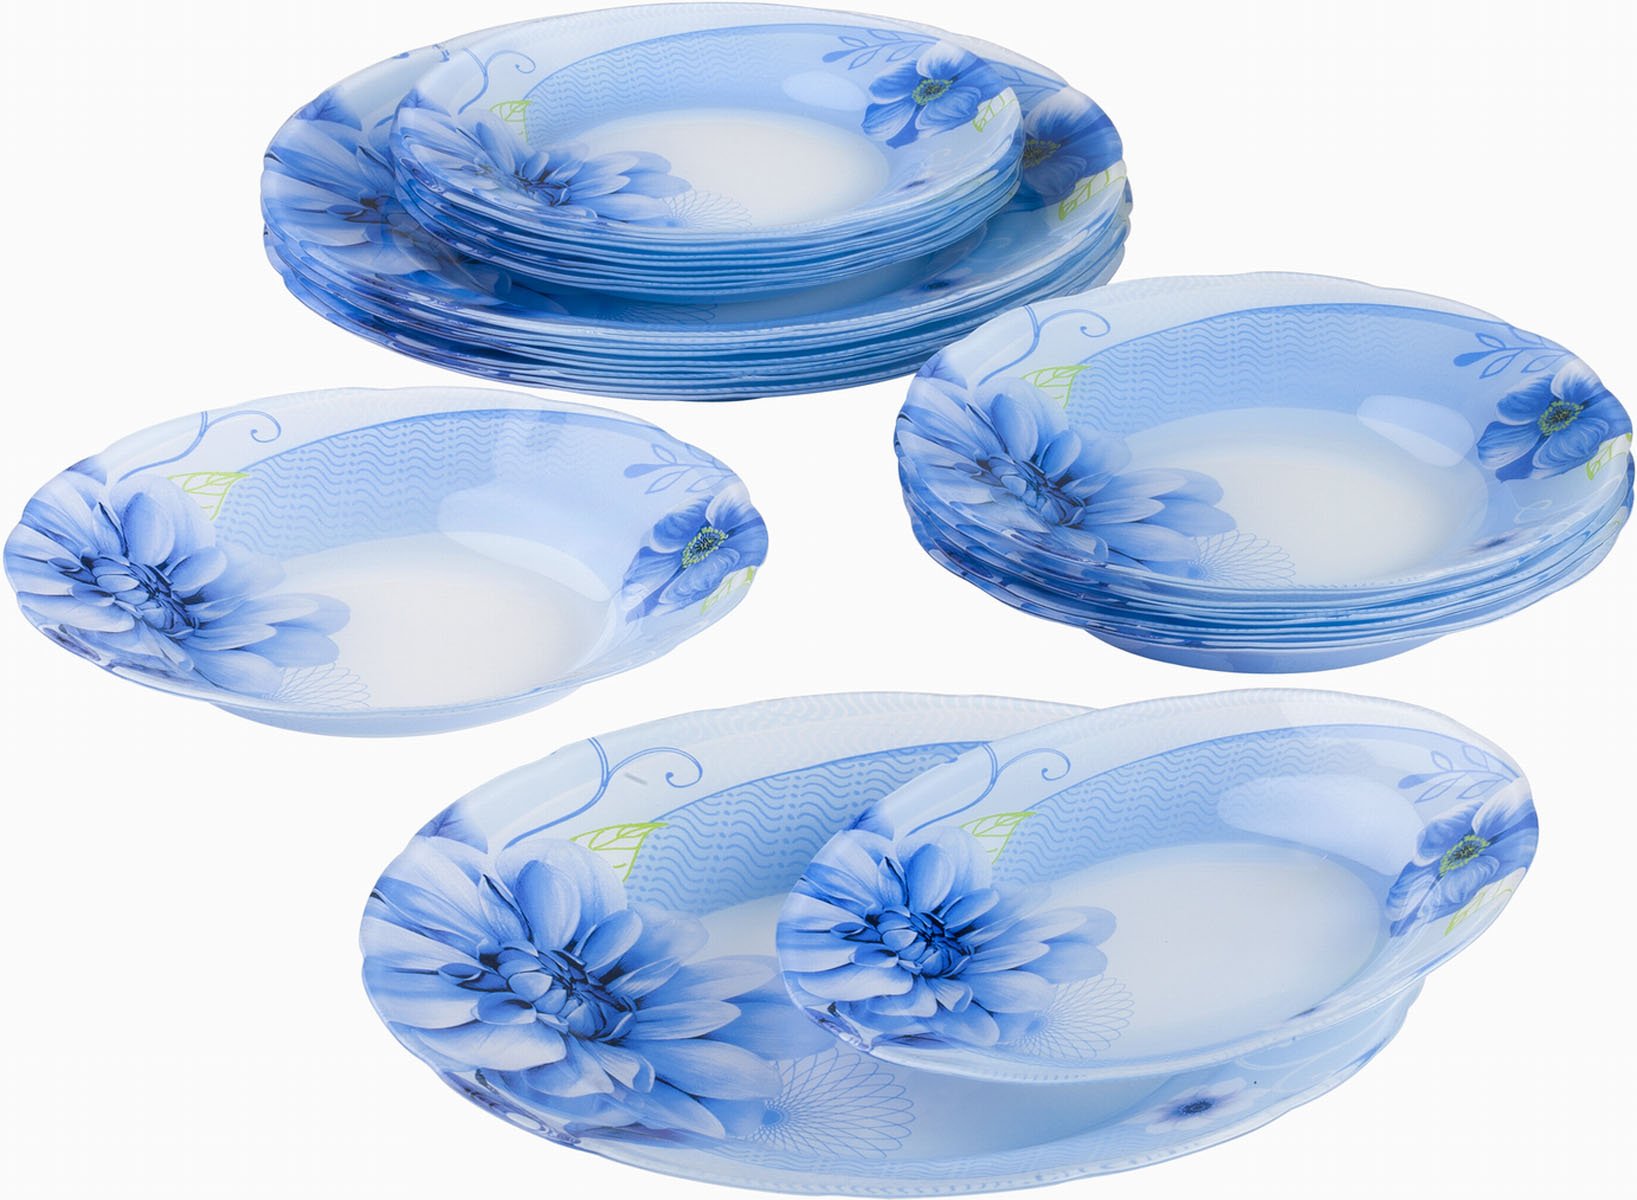 Озон интернет магазин комплекты. Люминарк столовый сервиз синий. Сервиз столовый Luminarc Velina Arcopal 24 предмета 6 персон. Синяя посуда Люминарк. Посуда Люминарк из опалового стекла.